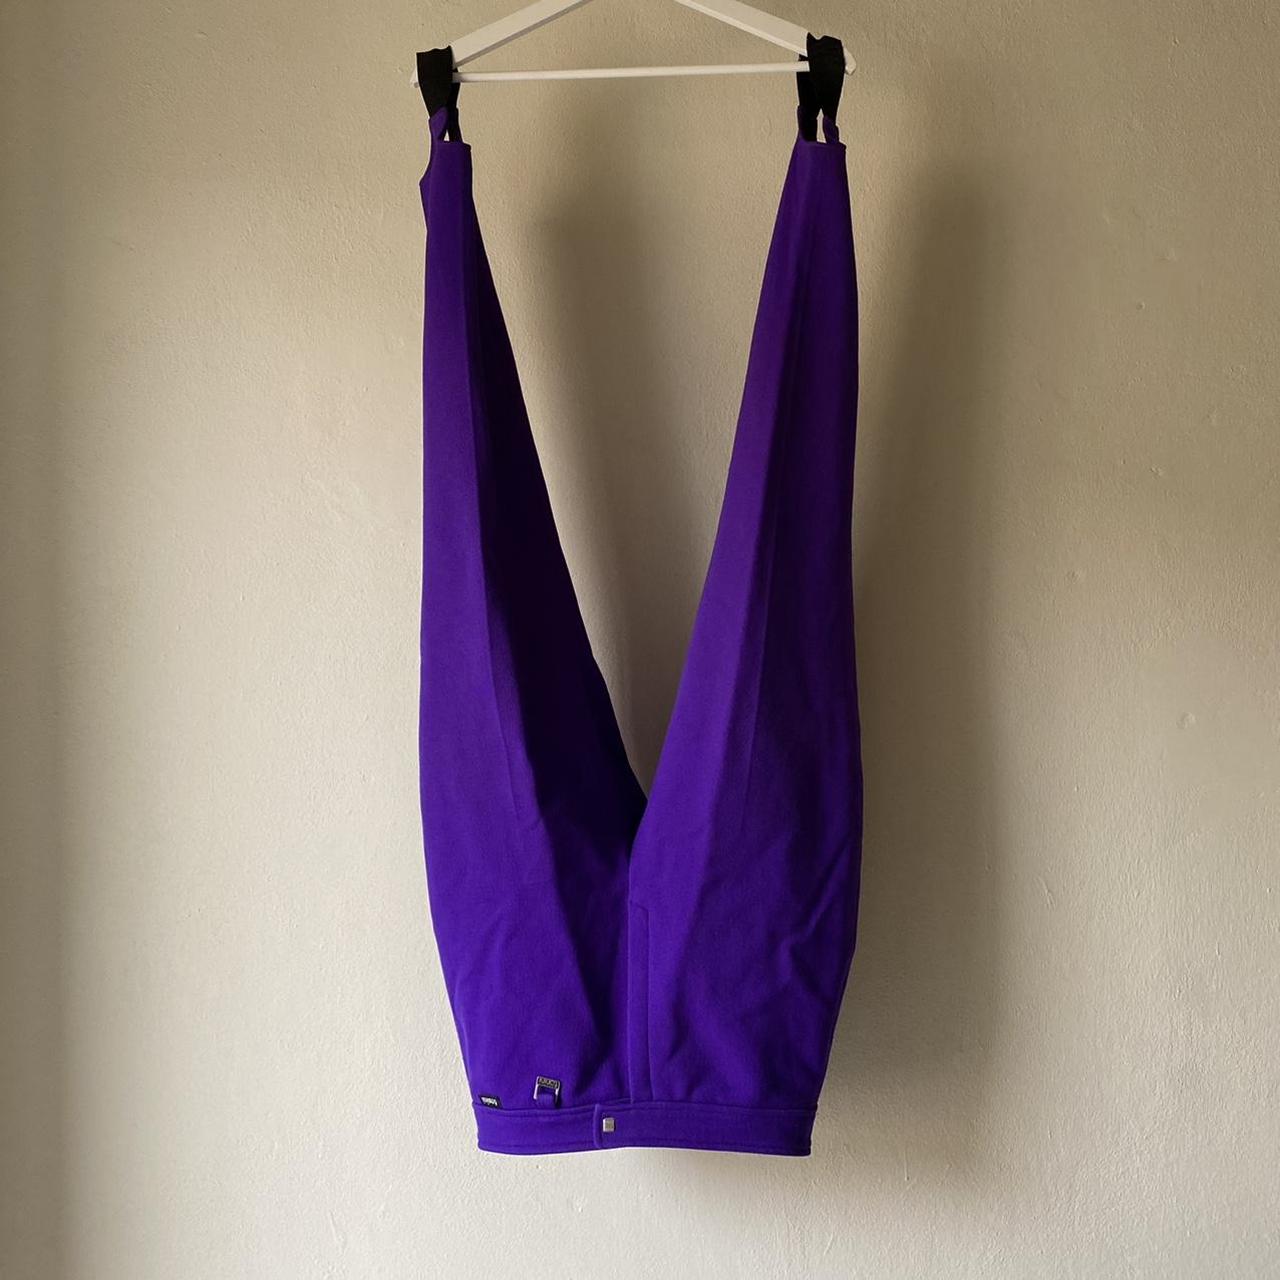 Designer Vintage purple ski pants with stirrups by... - Depop